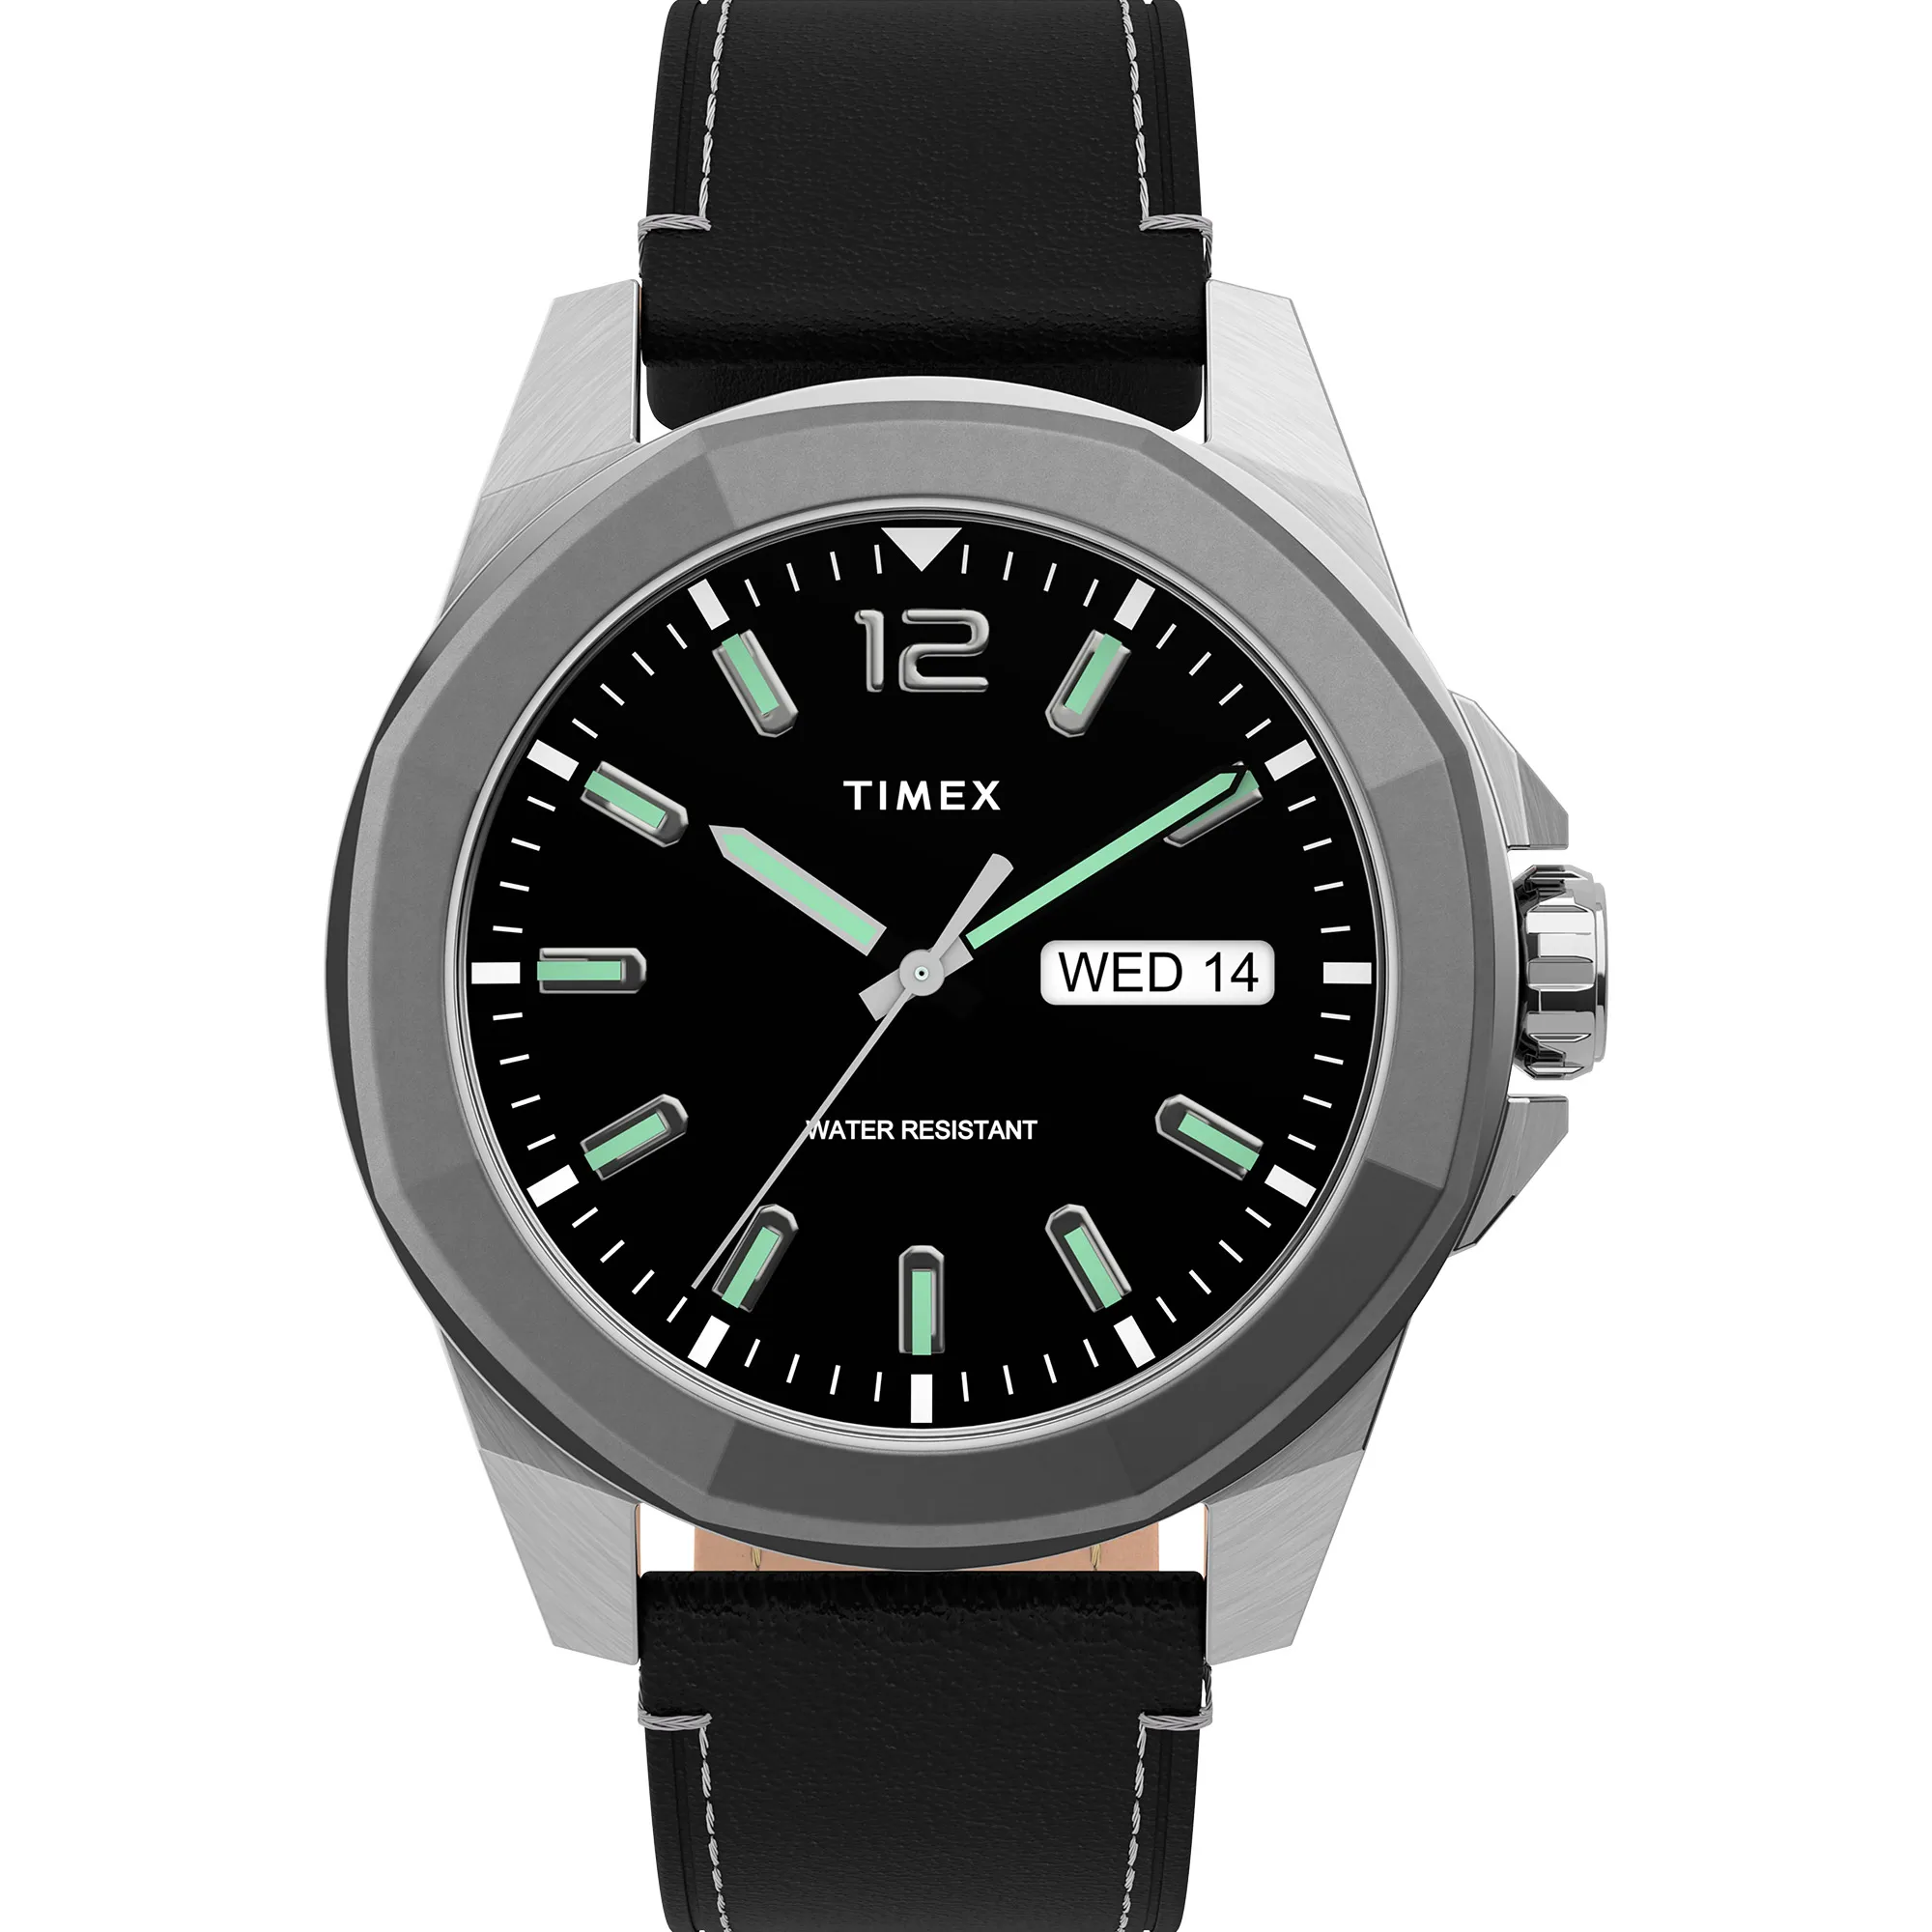 Watch Timex tw2u14900